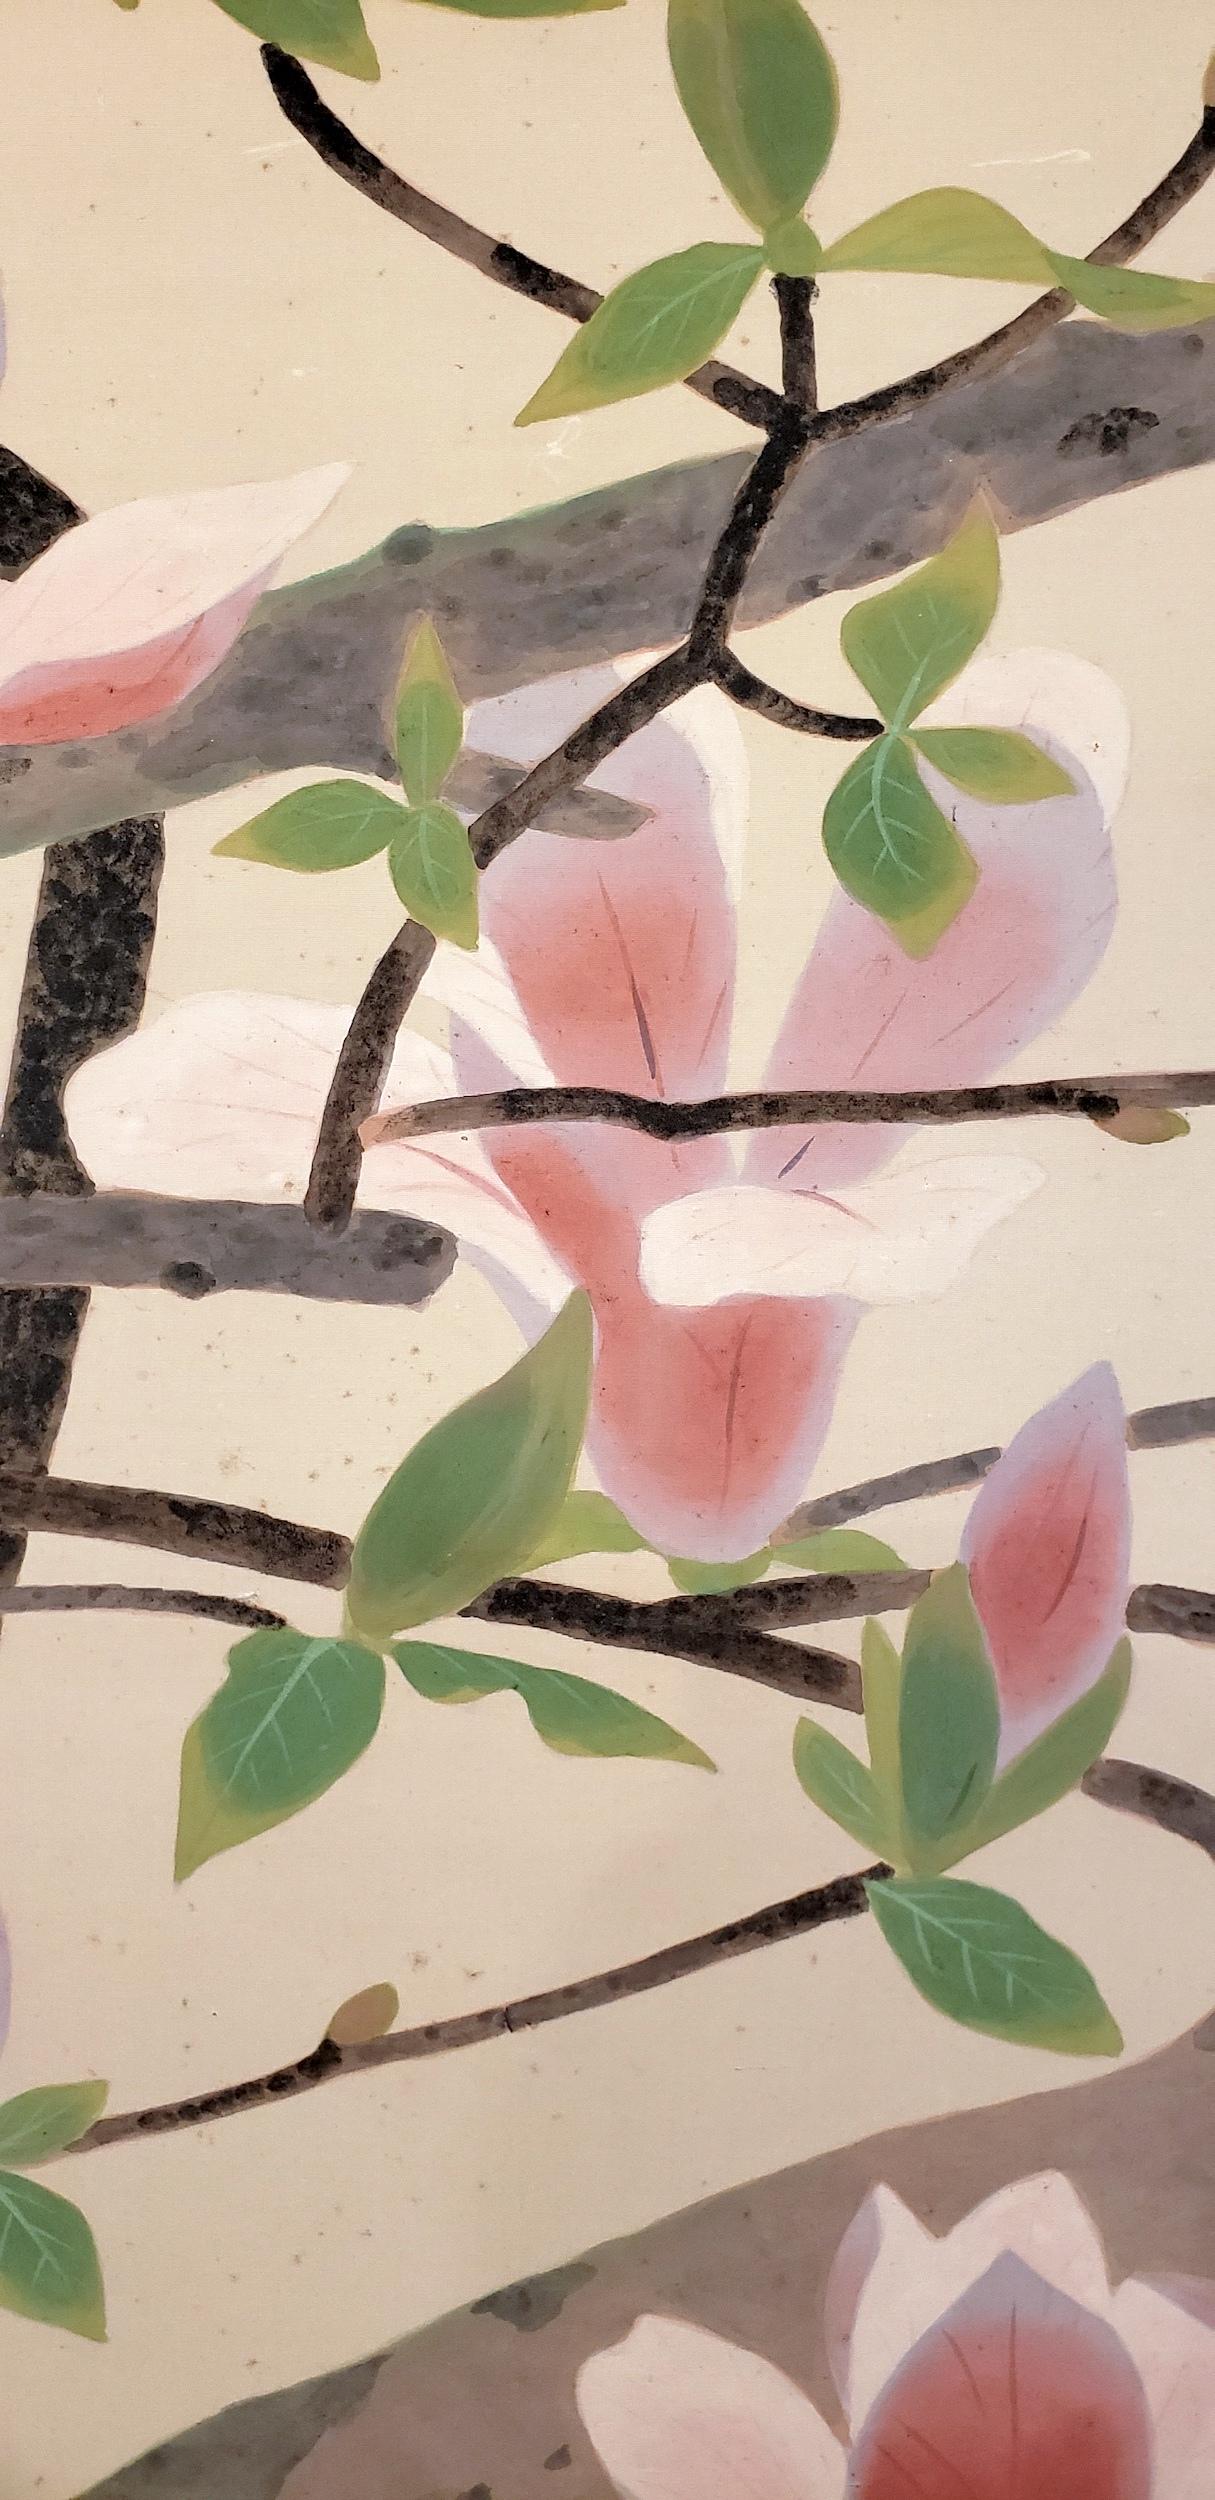 Japanischer Zwei-Panel-Bildschirm: Rosafarbene und weiße Magnolien in früher Blüte, Gemälde aus der Taisho-Periode (1912-1926) mit Zweigen japanischer Magnolienbäume, während sich die Blüten öffnen. Diese Magnolienart blüht im Spätwinter/Frühjahr